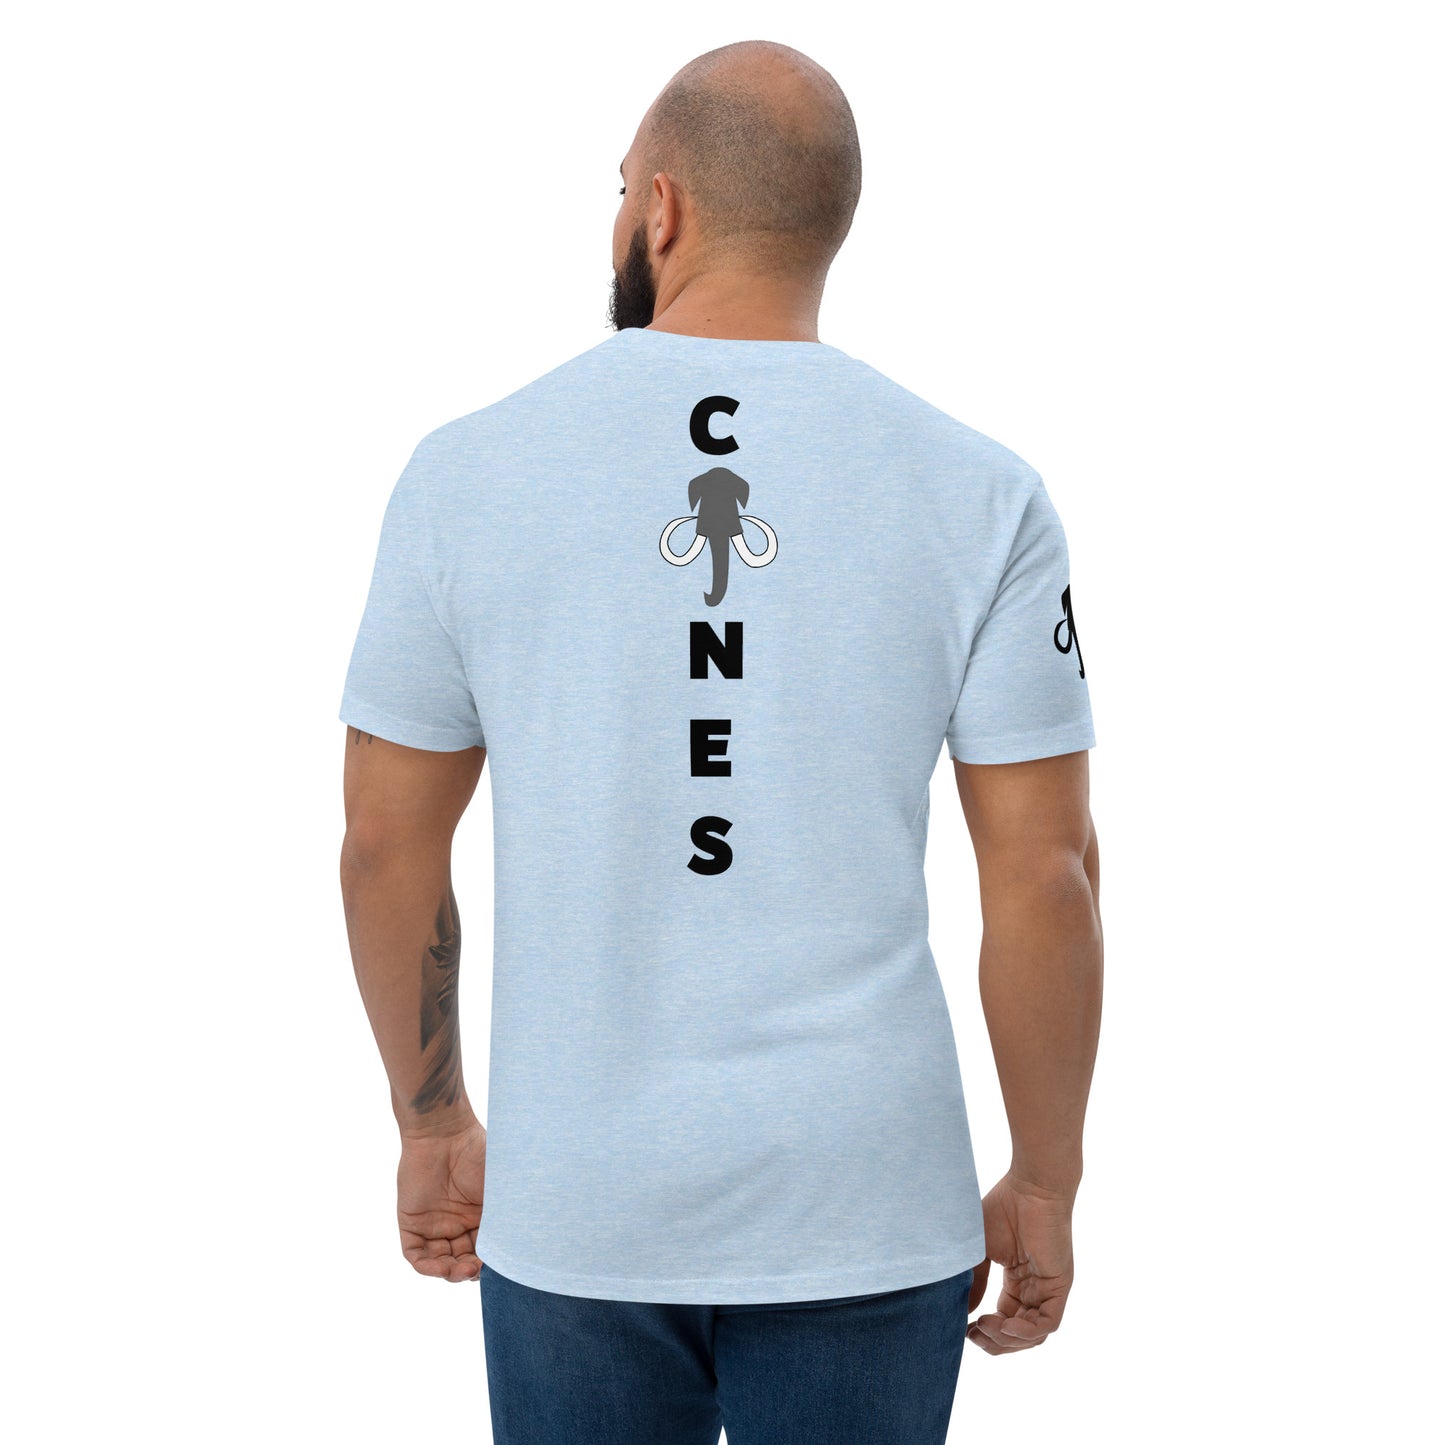 Cojones Spine (Short Sleeve T-shirt)